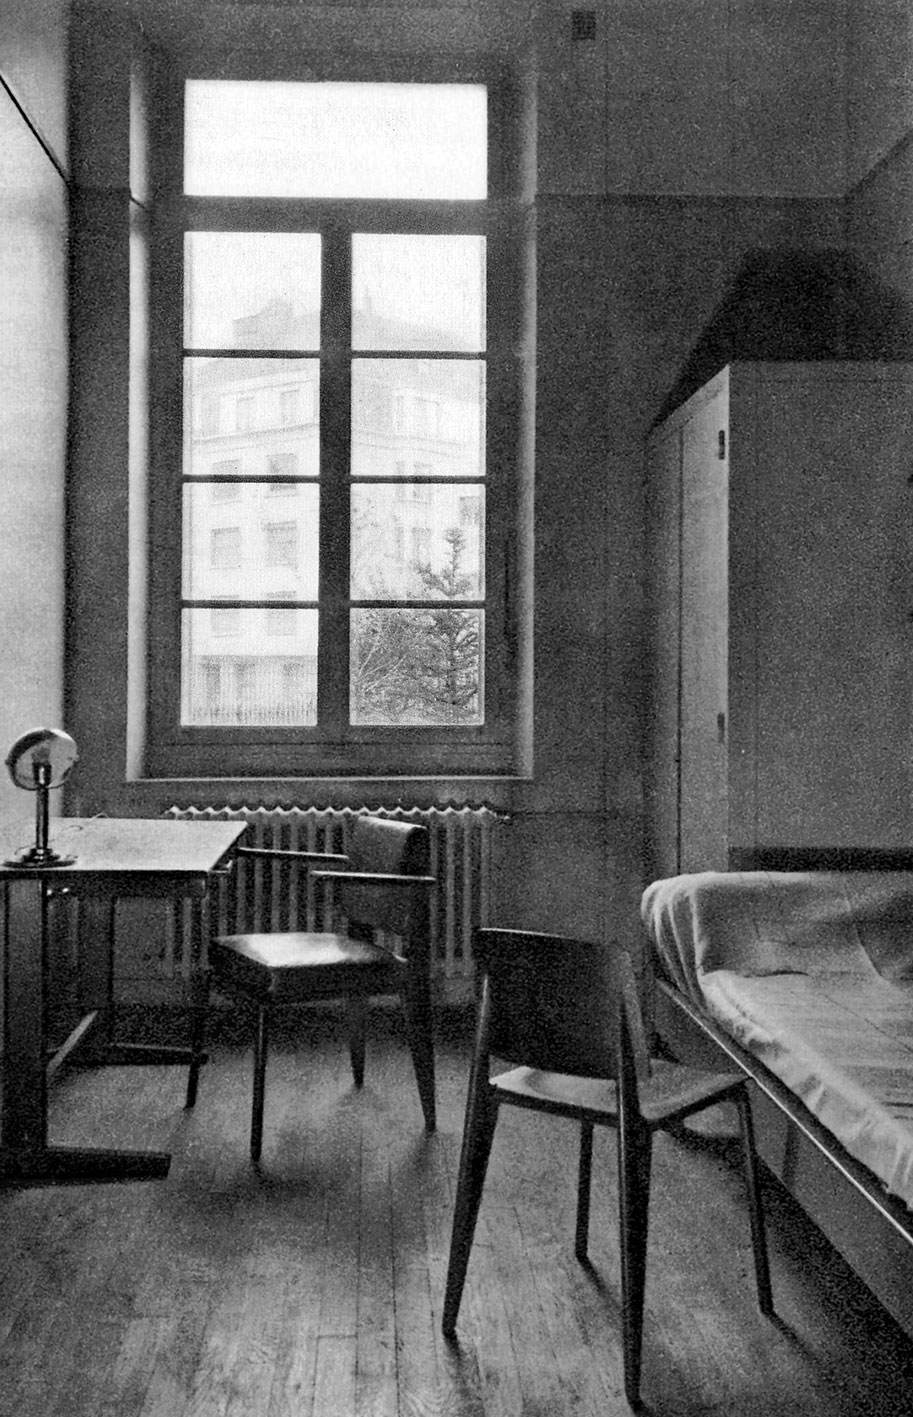 École nationale professionnelle de Metz (R. Fournez et L. Sainsaulieu, arch., 1935-1936). Chambre de maître avec un fauteuil de bureau CPDE, une chaise n° 4, une table Cité, un lit-divan.